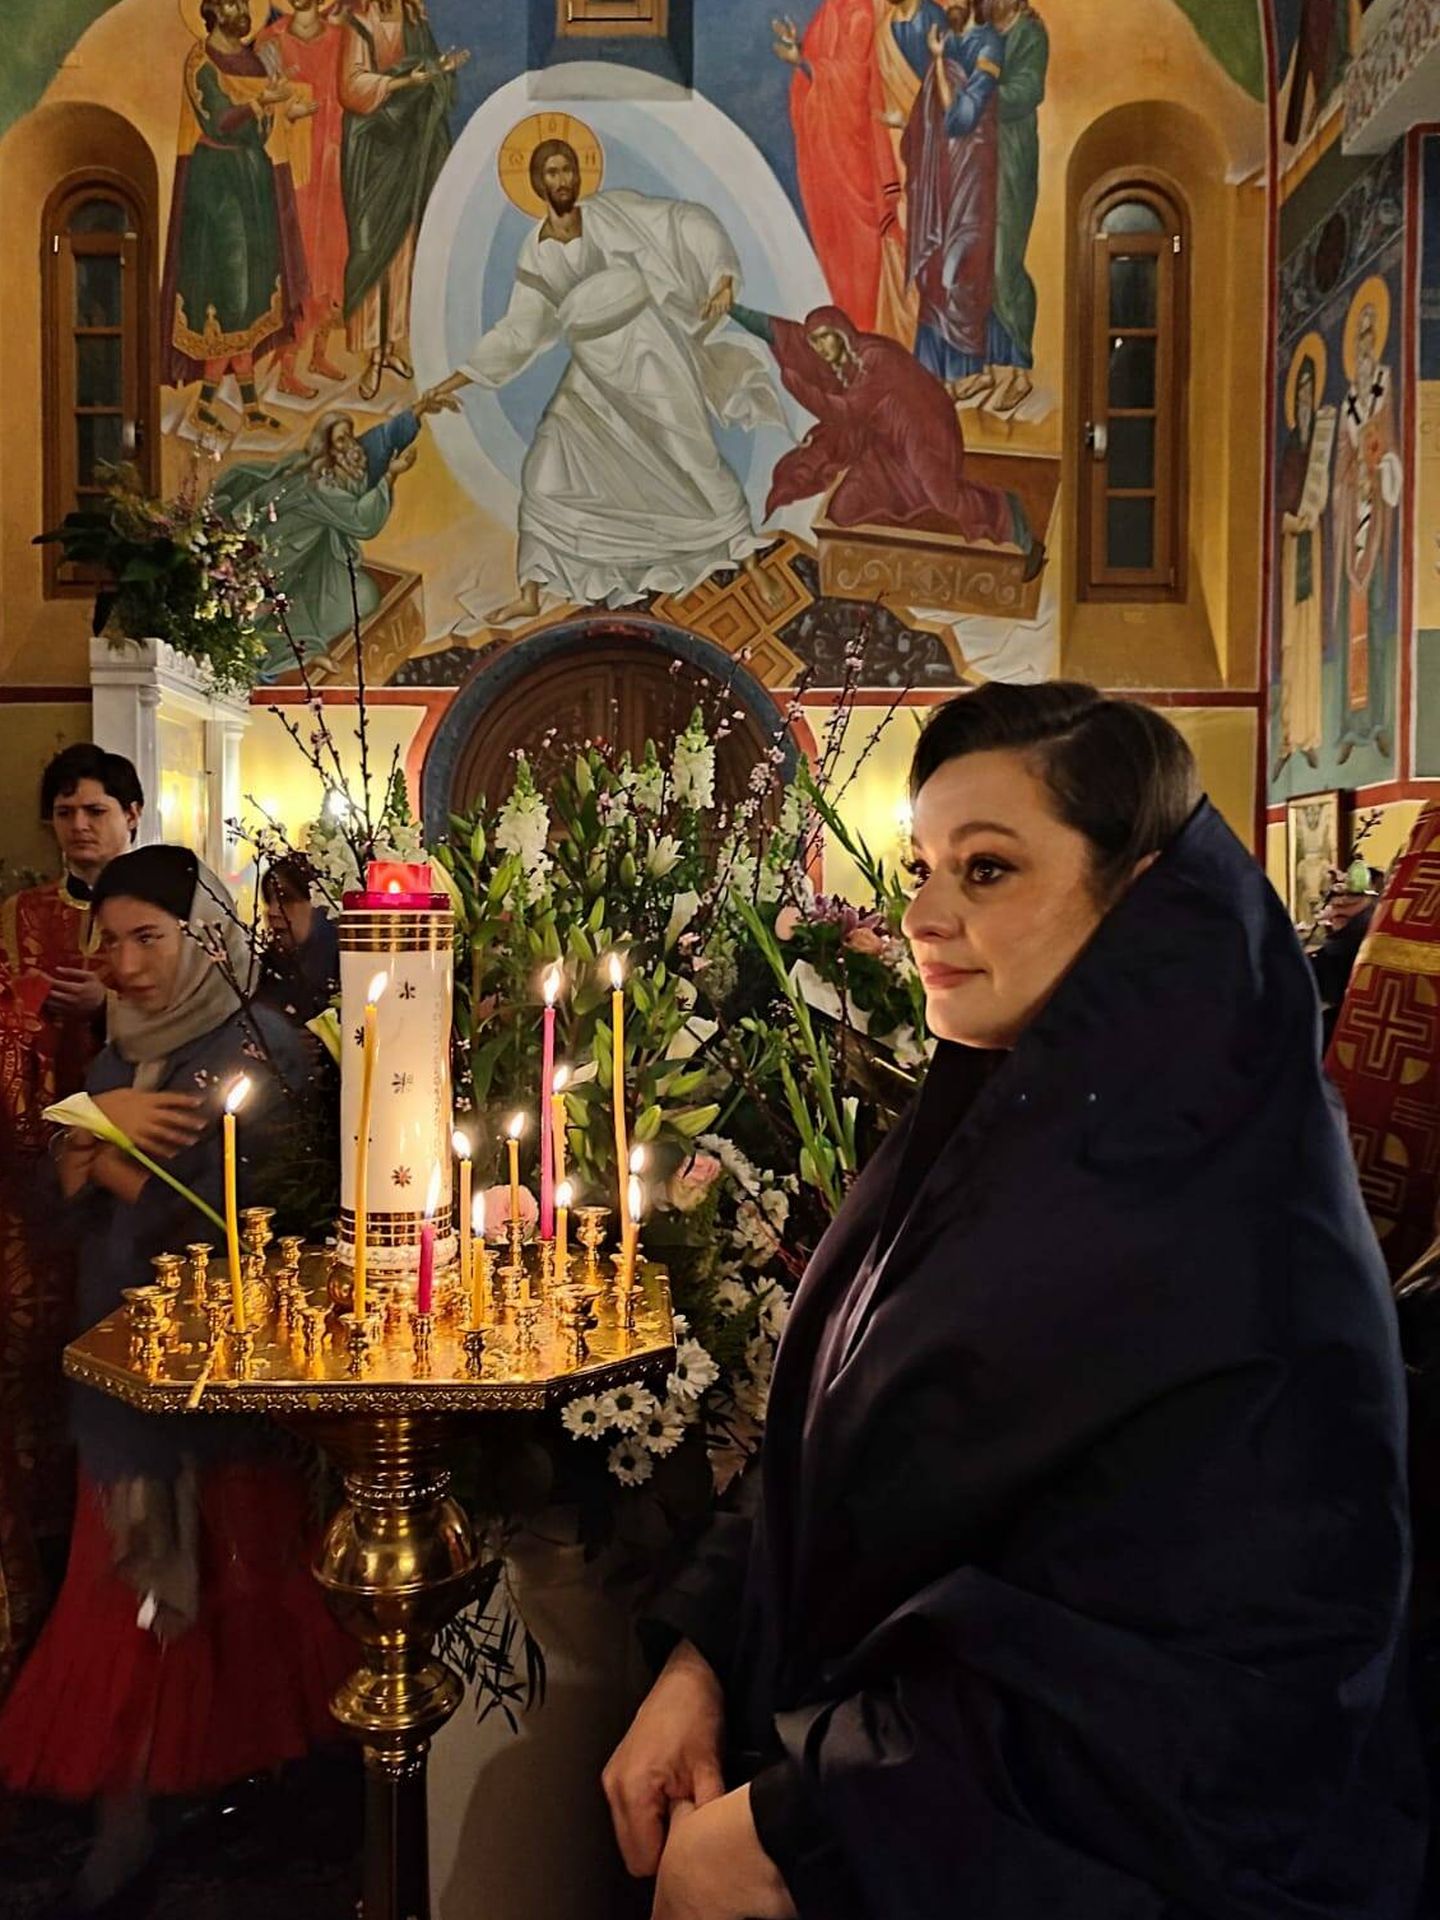 La gran duquesa en una iglesia ortodoxa. (Cortesía)